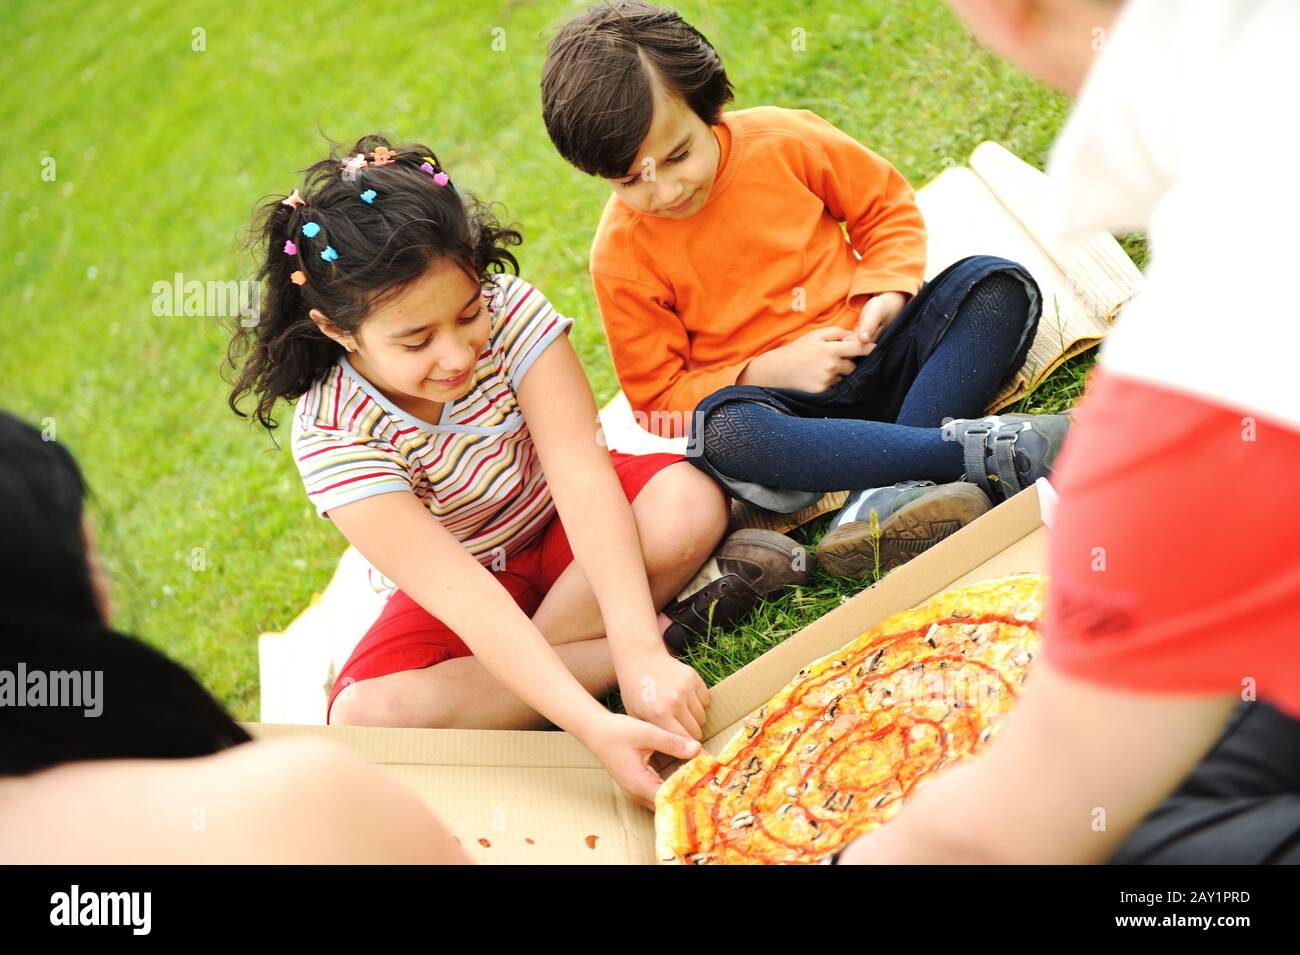 Manger de la pizza, pique-nique, famille en plein air Banque D'Images